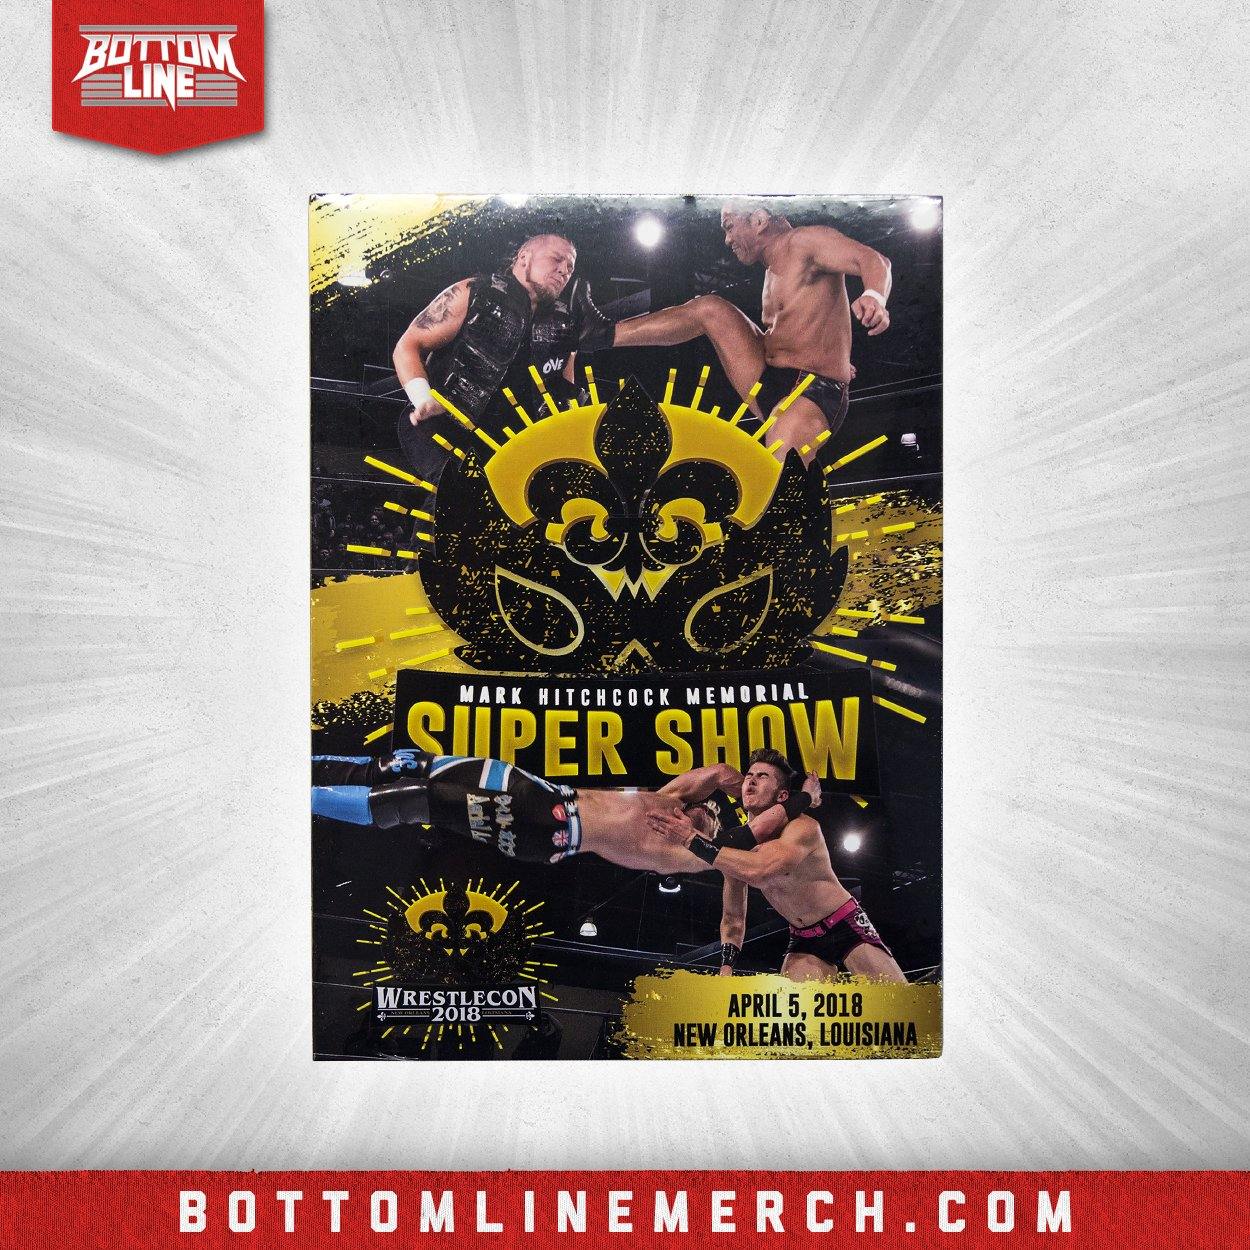 Buy Now – Wrestlecon "Mark Hitchcock Memorial Super Show" (04/05/18) DVD – Wrestler & Wrestling Merch – Bottom Line